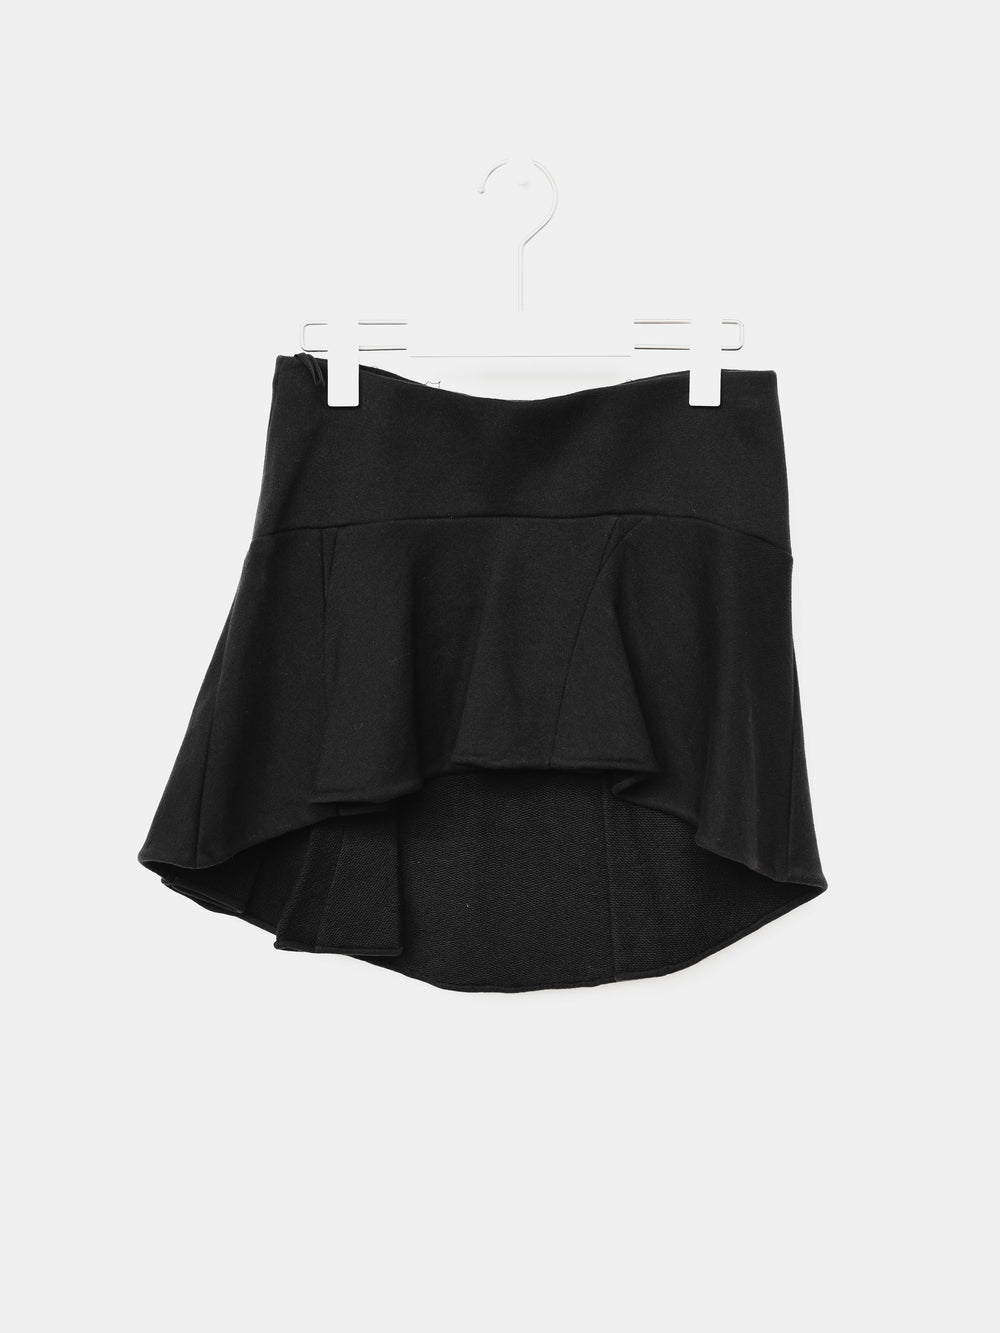 Helmut Lang 00s Asymmetric Skirt